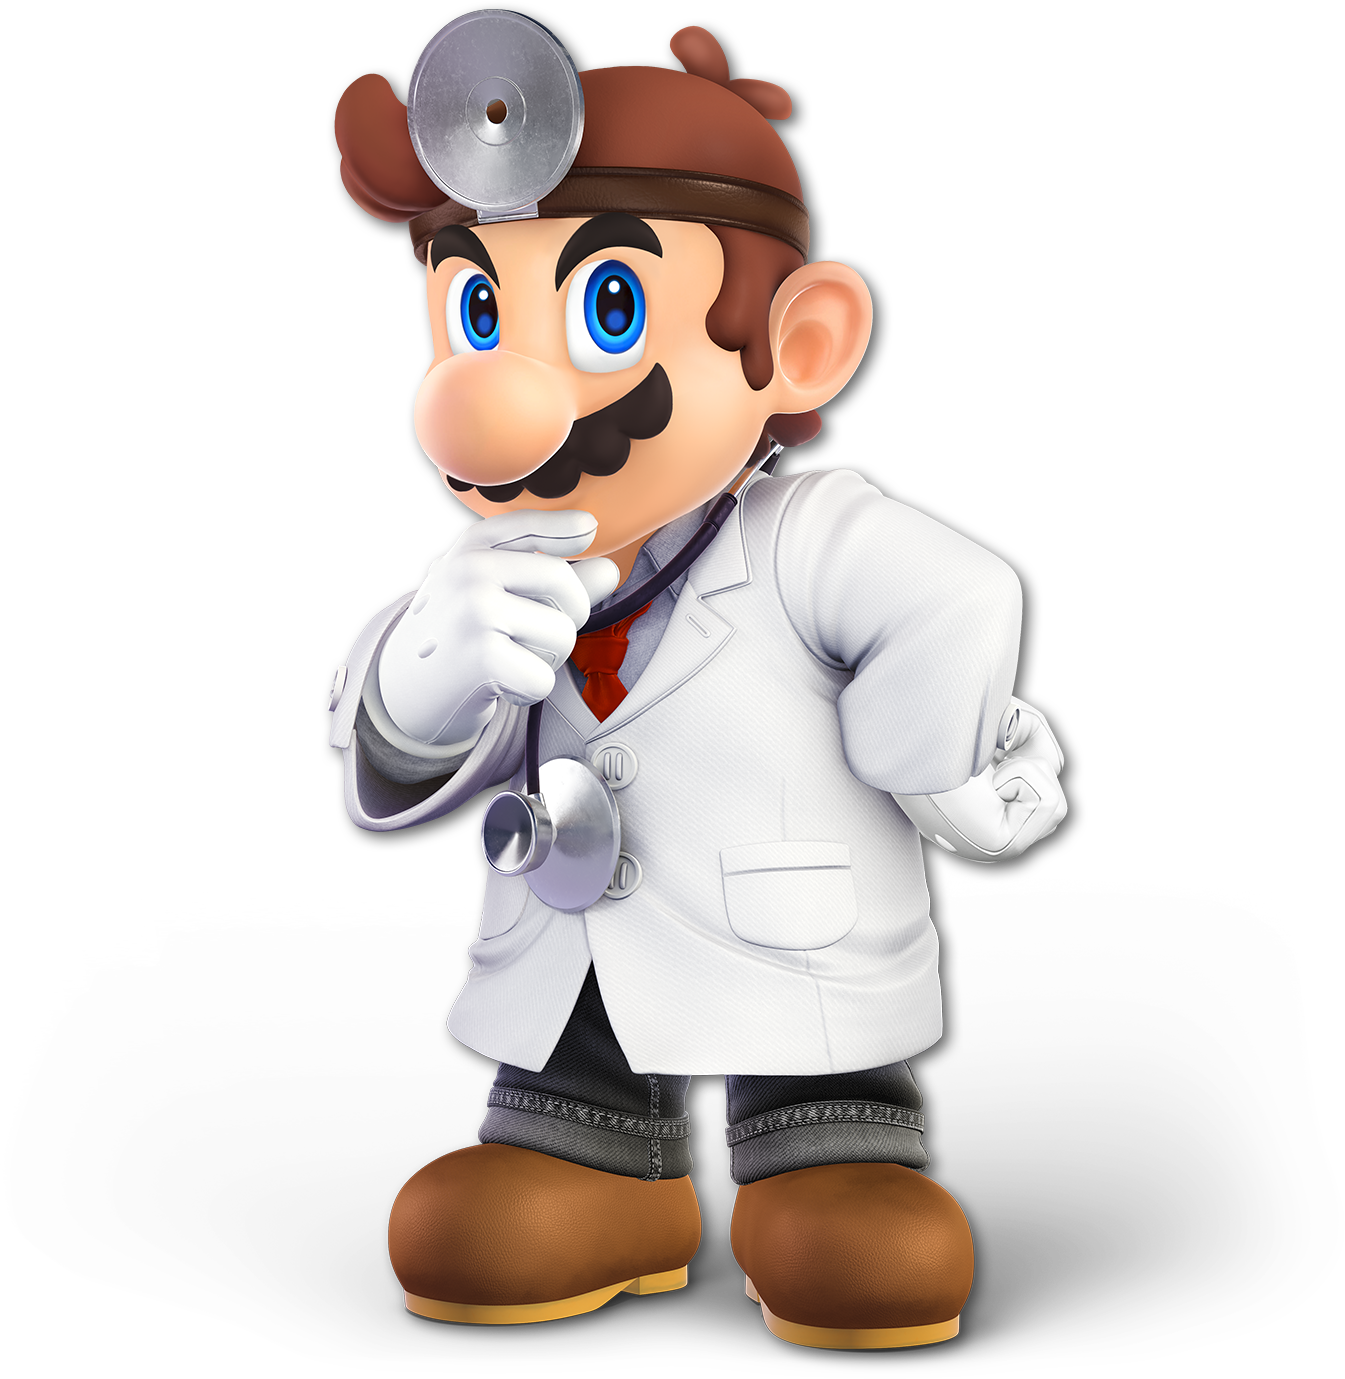 SSBU 18 Dr Mario.png